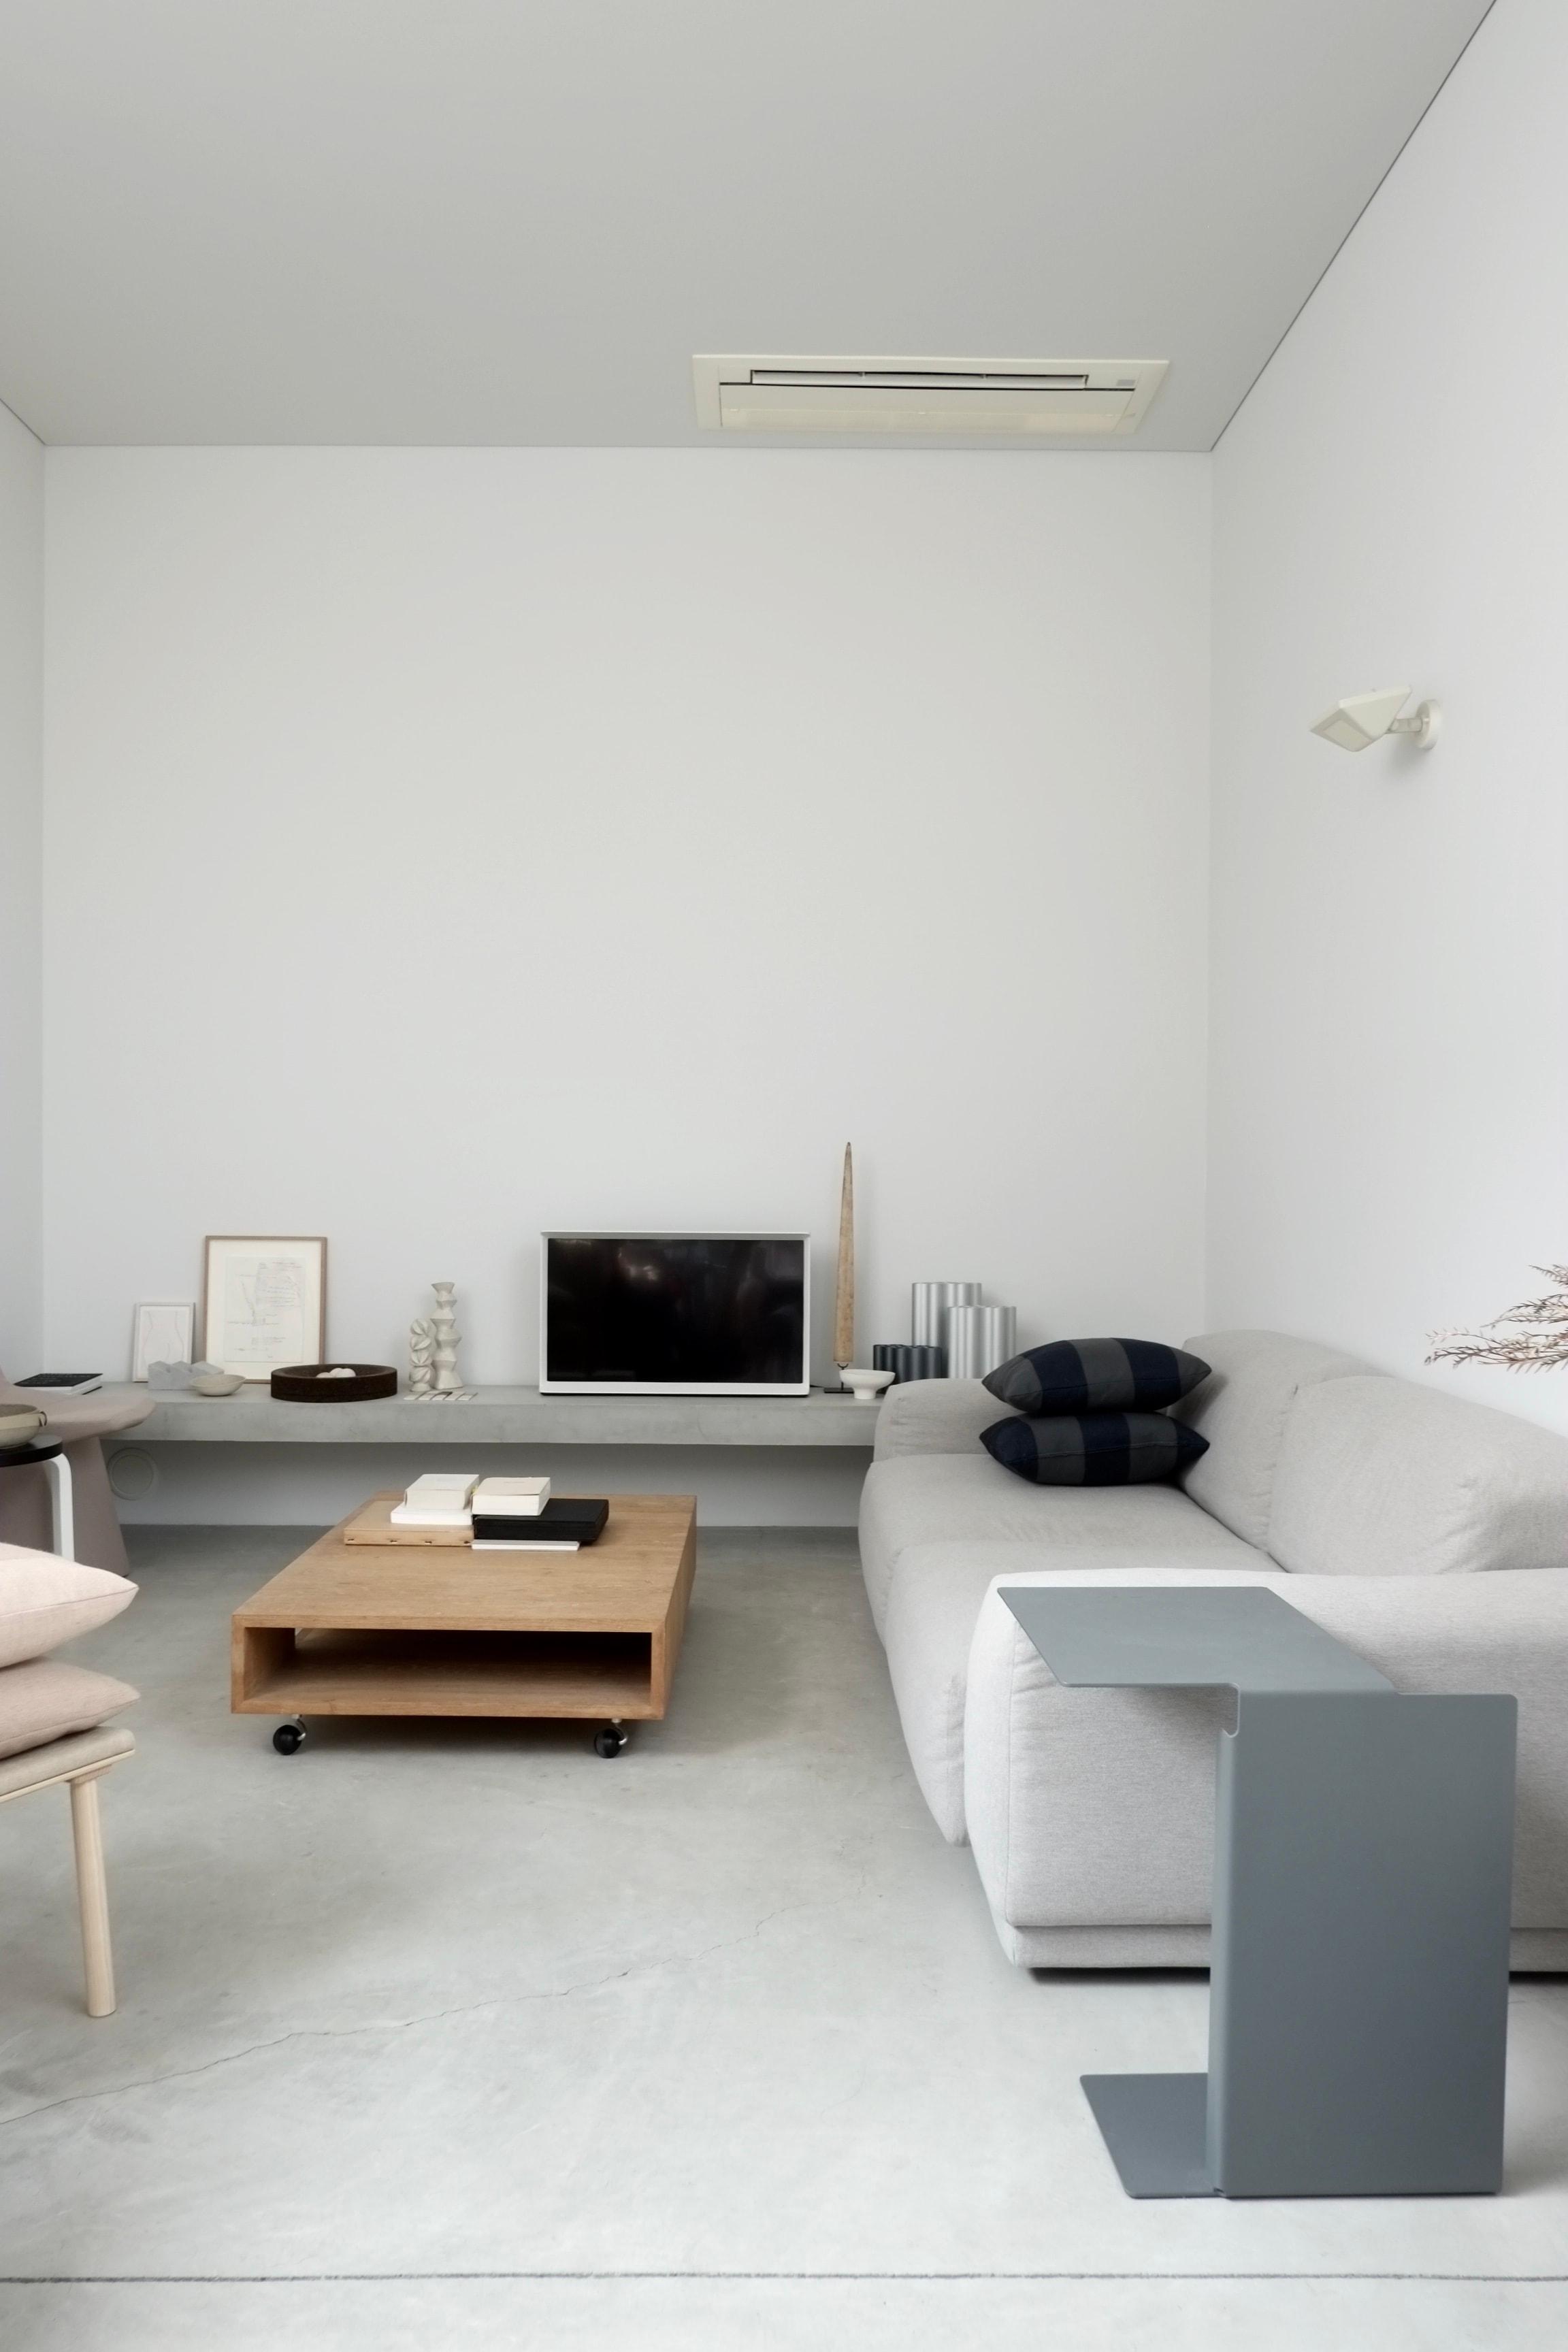 私と部屋 vol.23 自由設計のコーポラティブハウスで、家具を愛でる暮らし。 ー吉田 裕美佳さん - Slide:1